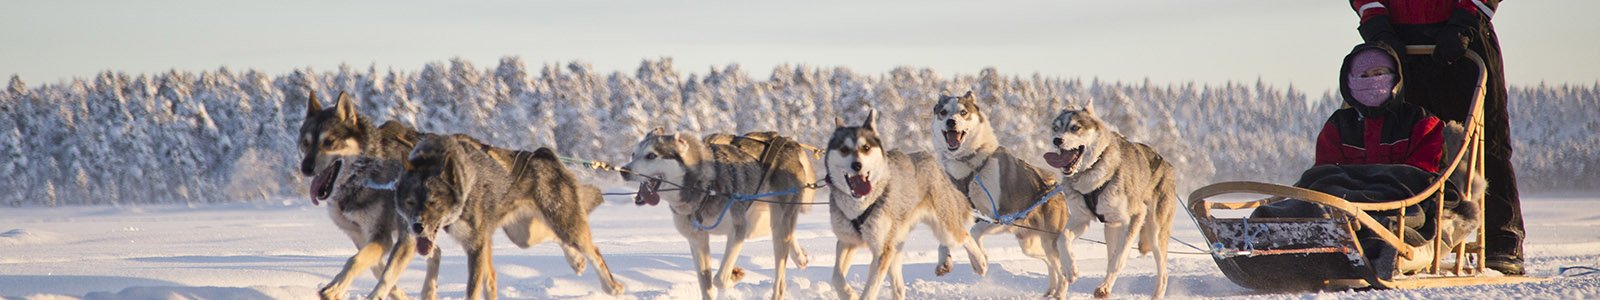 Ervaringen Lapland van Voigt Travel reizigers